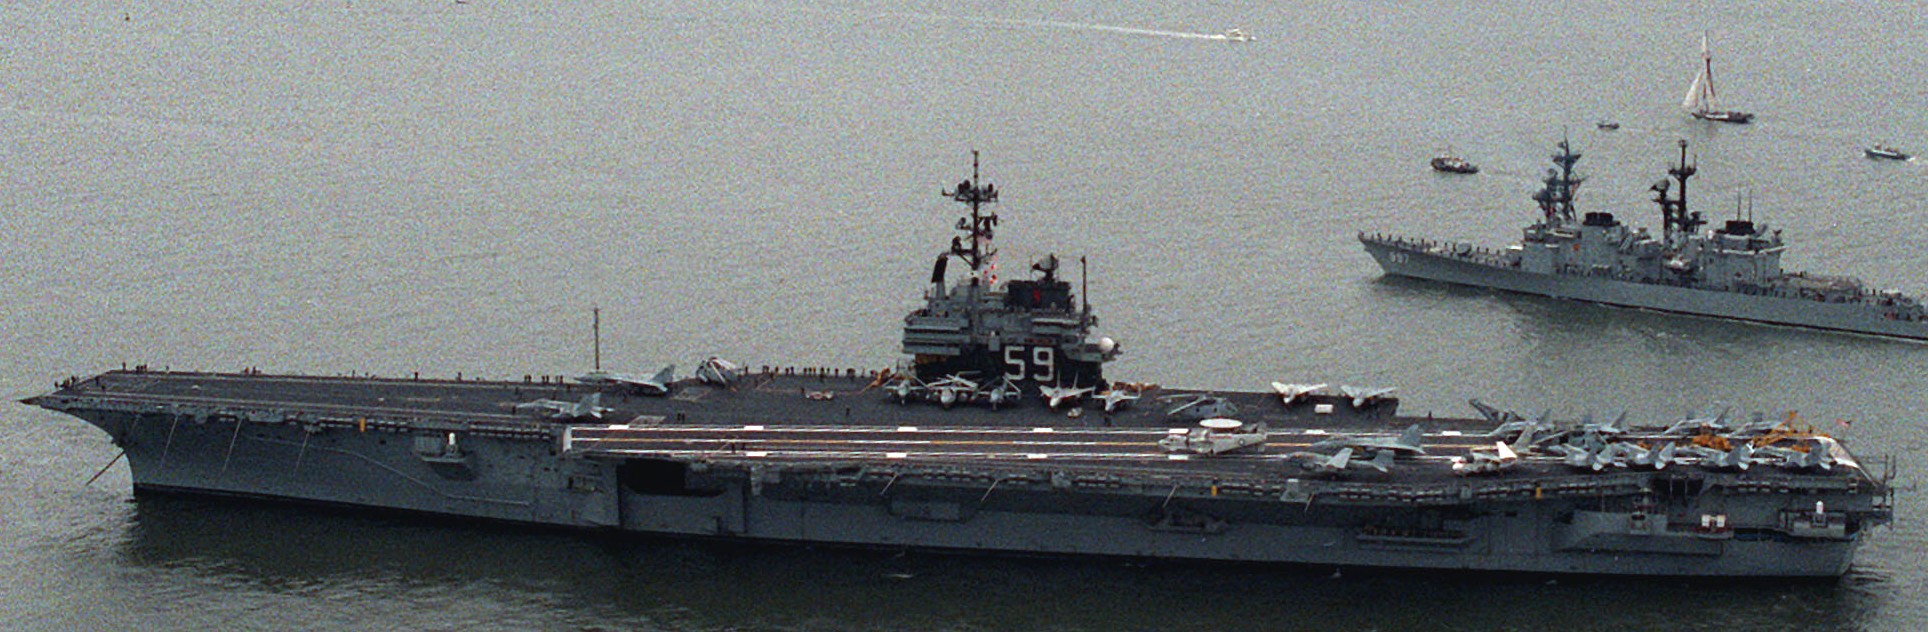 cv-59 uss forrestal aircraft carrier us navy fleet week new york 1989 105